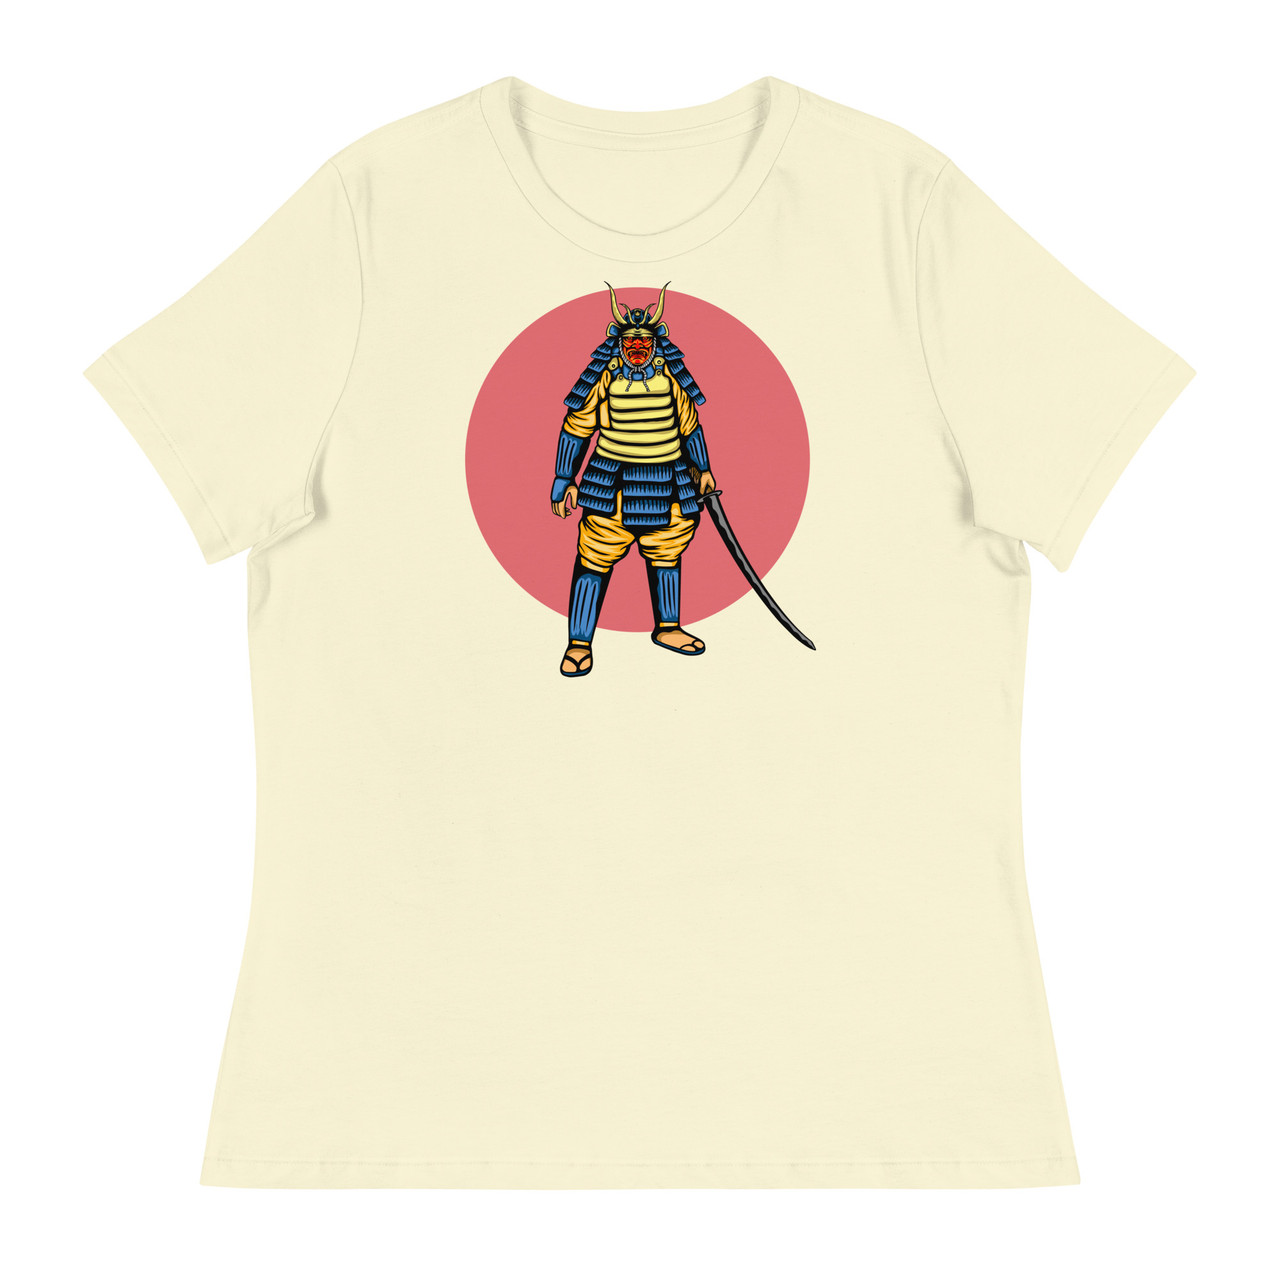 Samurai 17 Women's Relaxed T-Shirt - Bella + Canvas 6400 